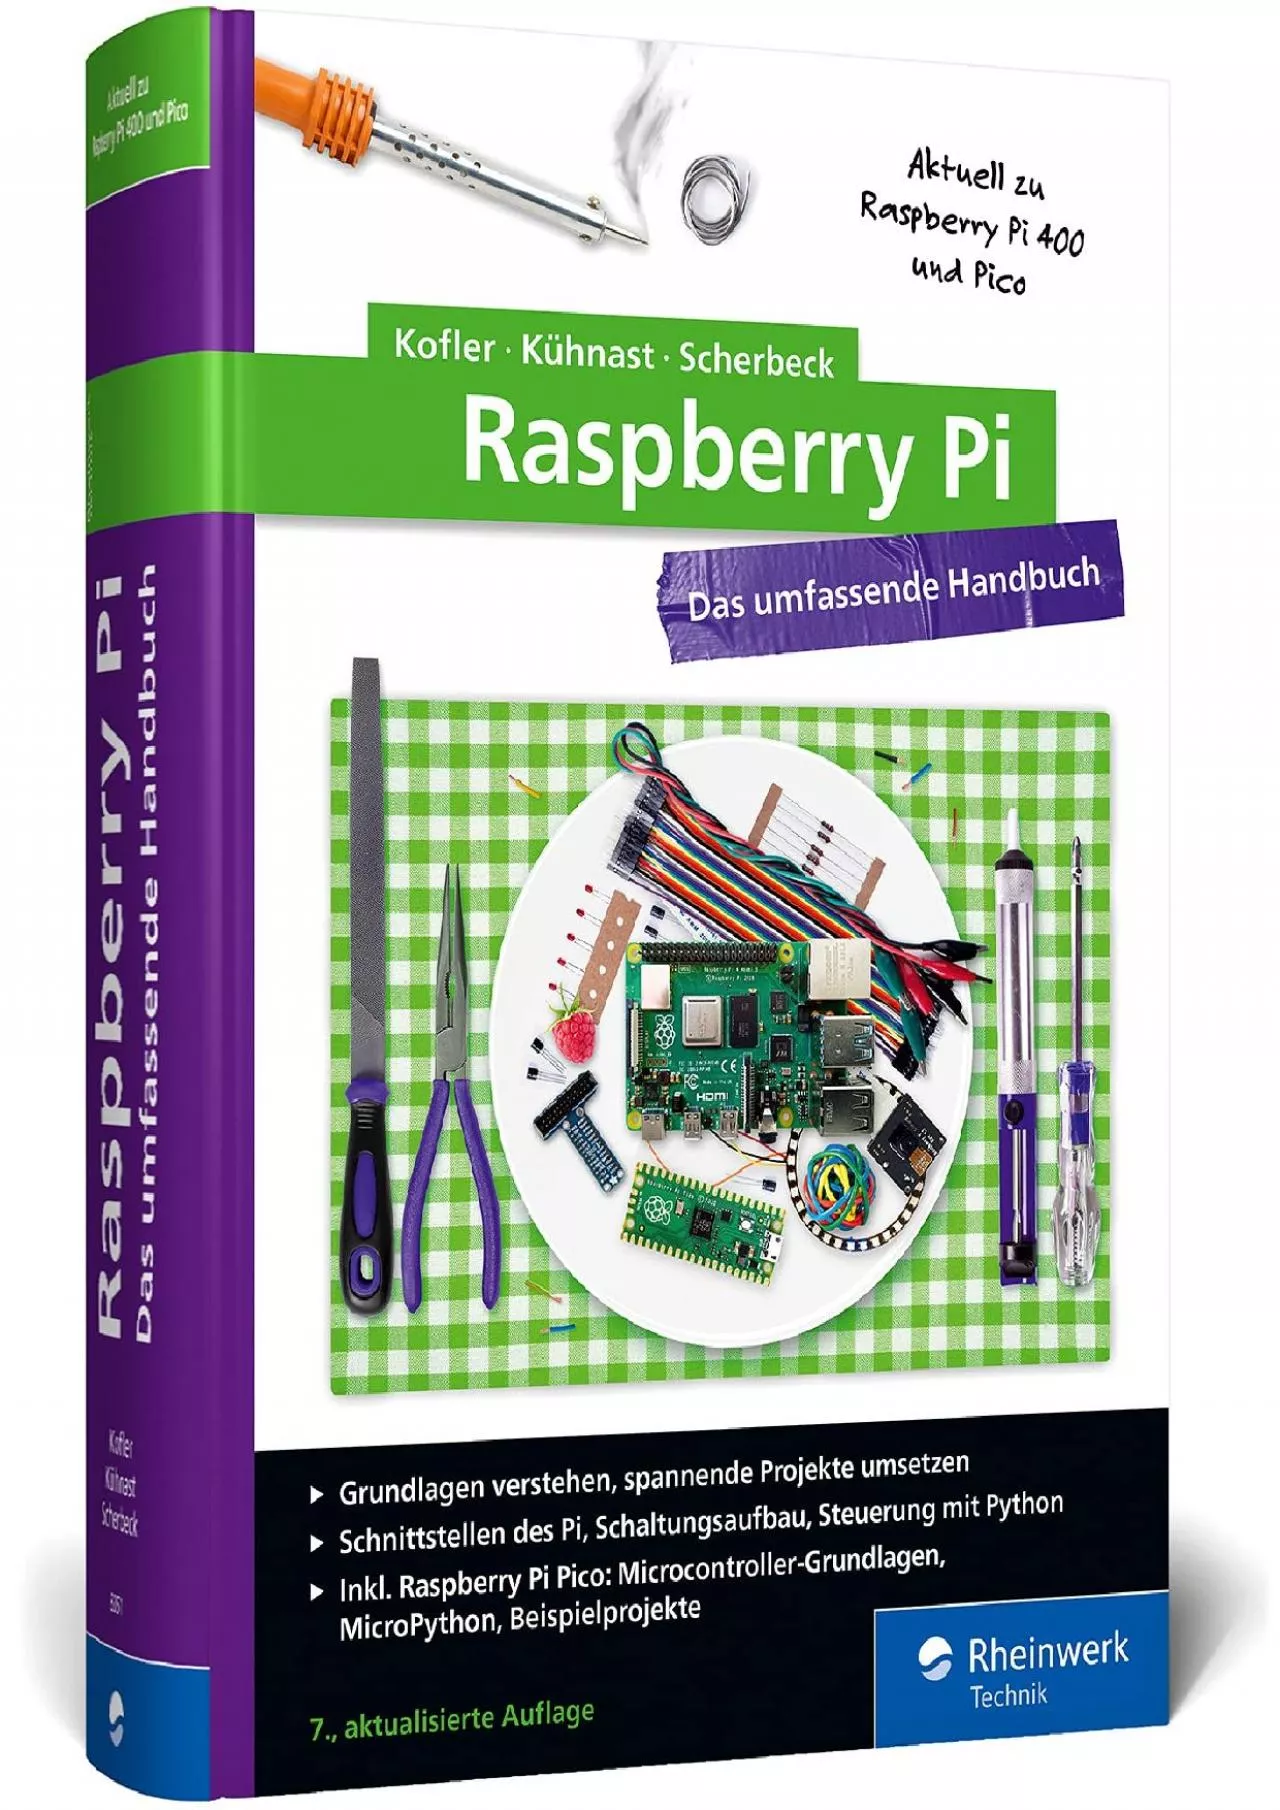 [FREE]-Raspberry Pi: Das umfassende Handbuch. Über 1.000 Seiten in Farbe. Mit Einstieg